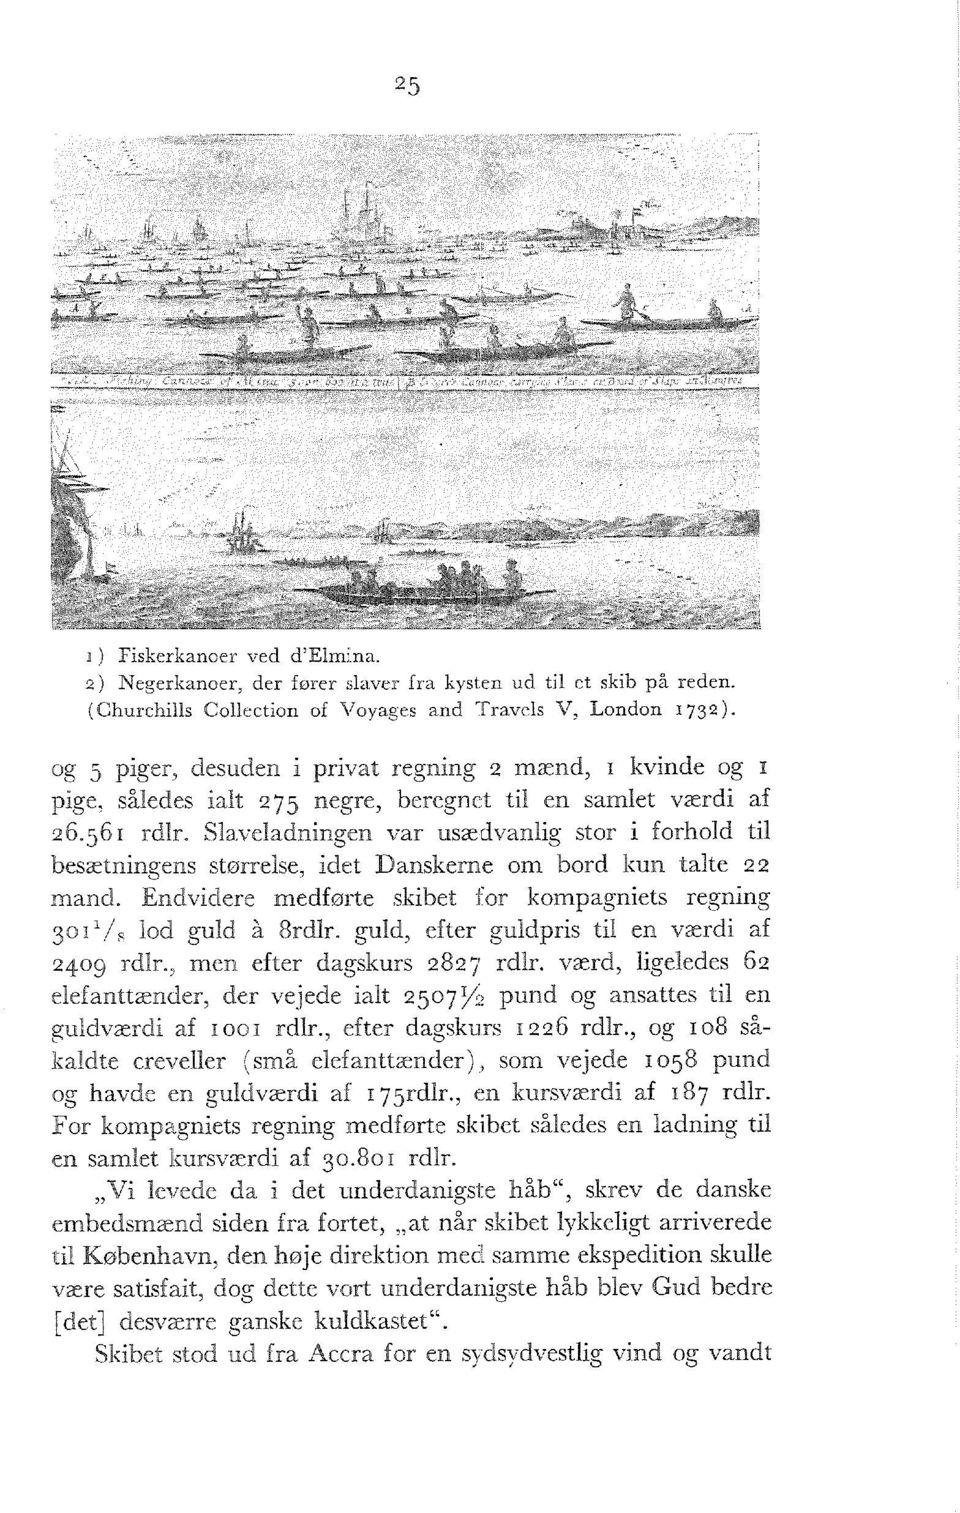 Slaveladningen var usædvanlig stor i forhold til besætningens størrelse, idet Danskerne om bord kun talte 22 mand. Endvidere medførte skibet for kompagniets regning 30i 1 / s lod guld å 8rdlr.